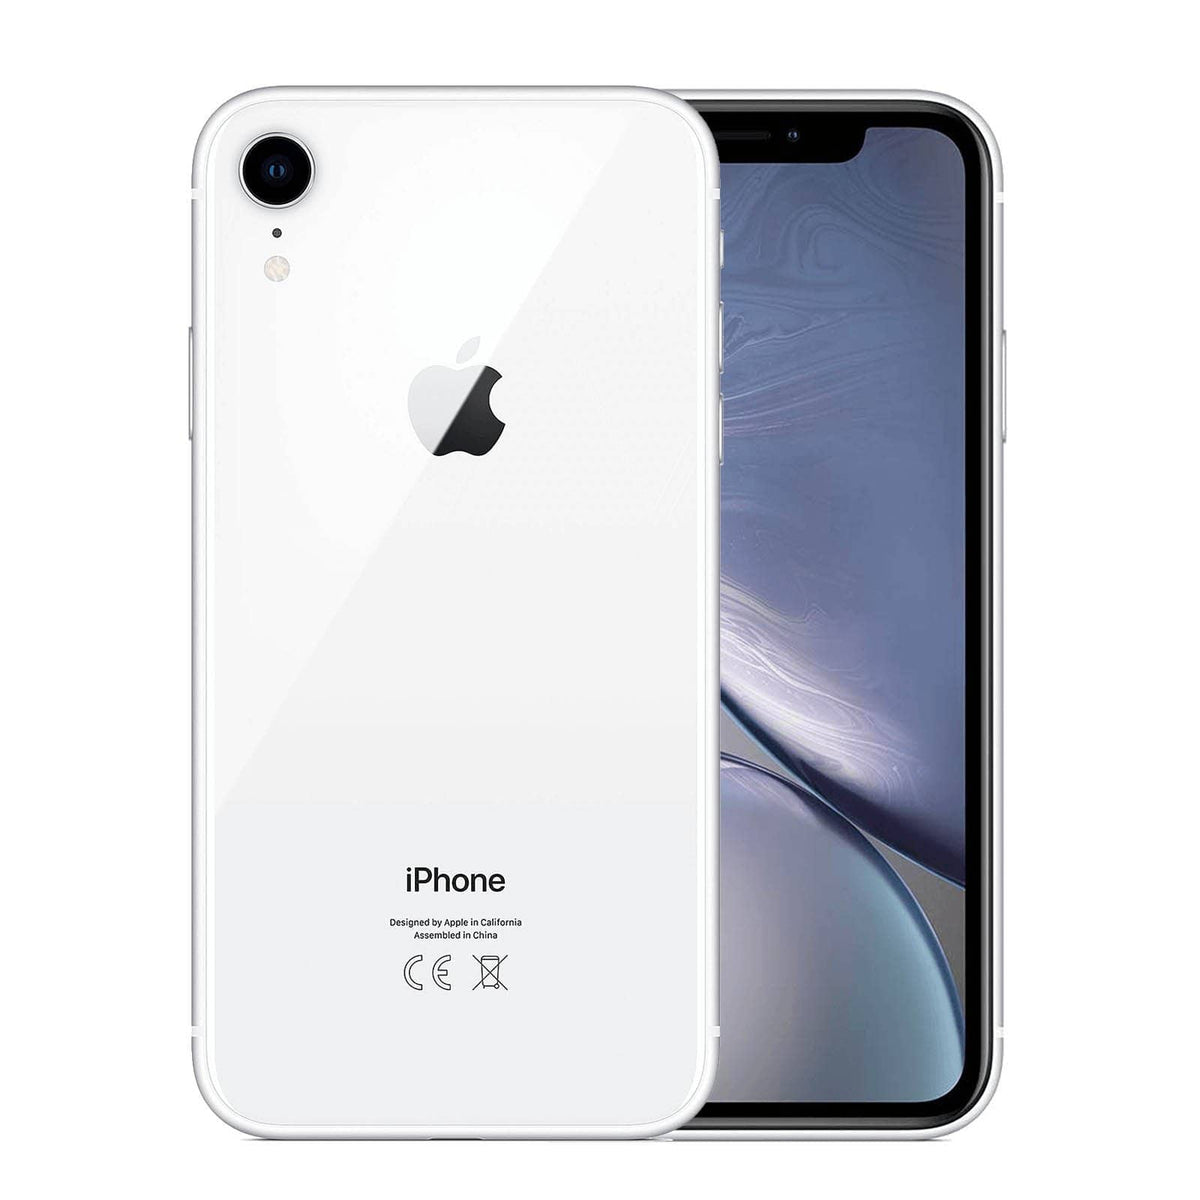 Apple iPhone XR 64 GB - White - Unlocked - Refurbished – Loop-MobileUK